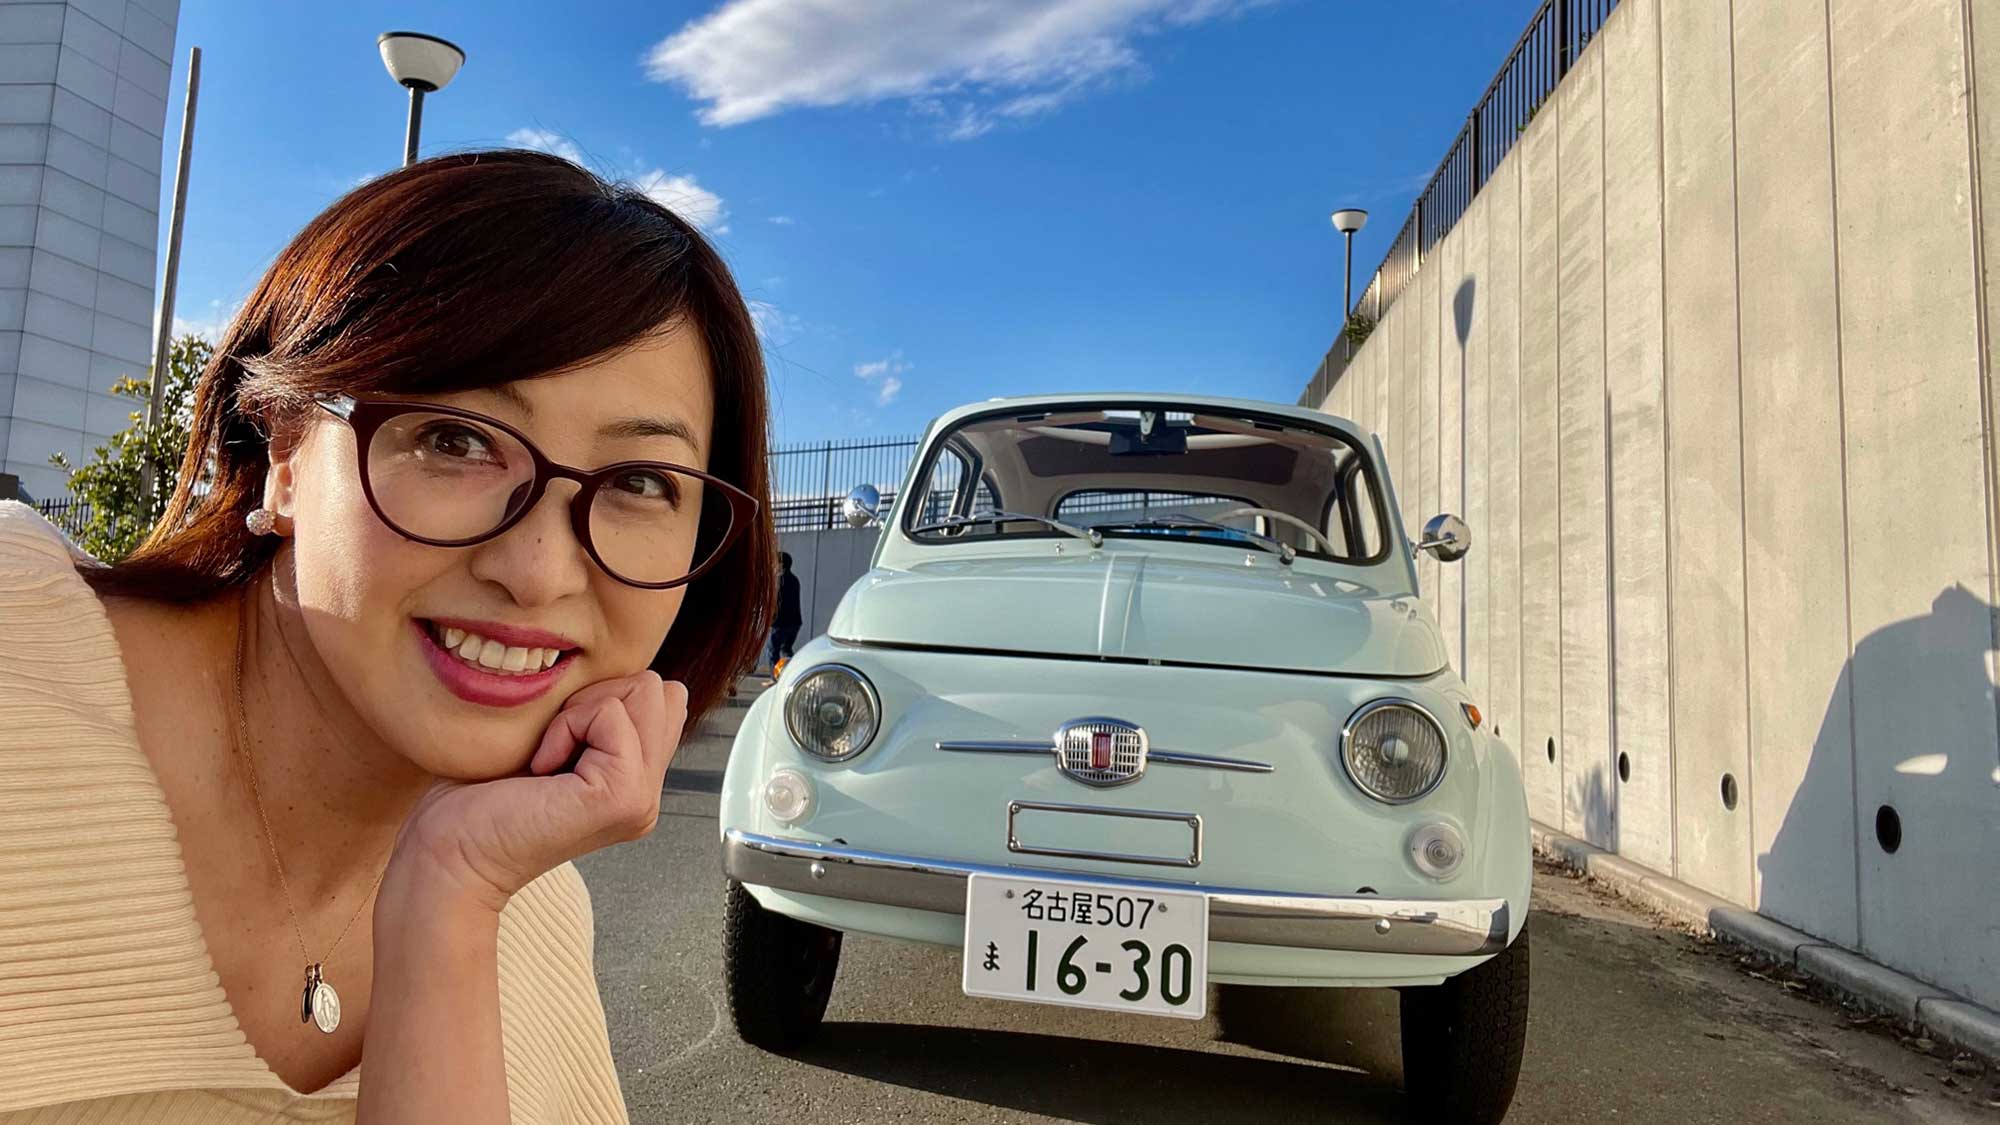 ルパンの愛車 旧型fiat500が ある日本人の愛で電気自動車として蘇る 吉田由美 Evsmartブログ